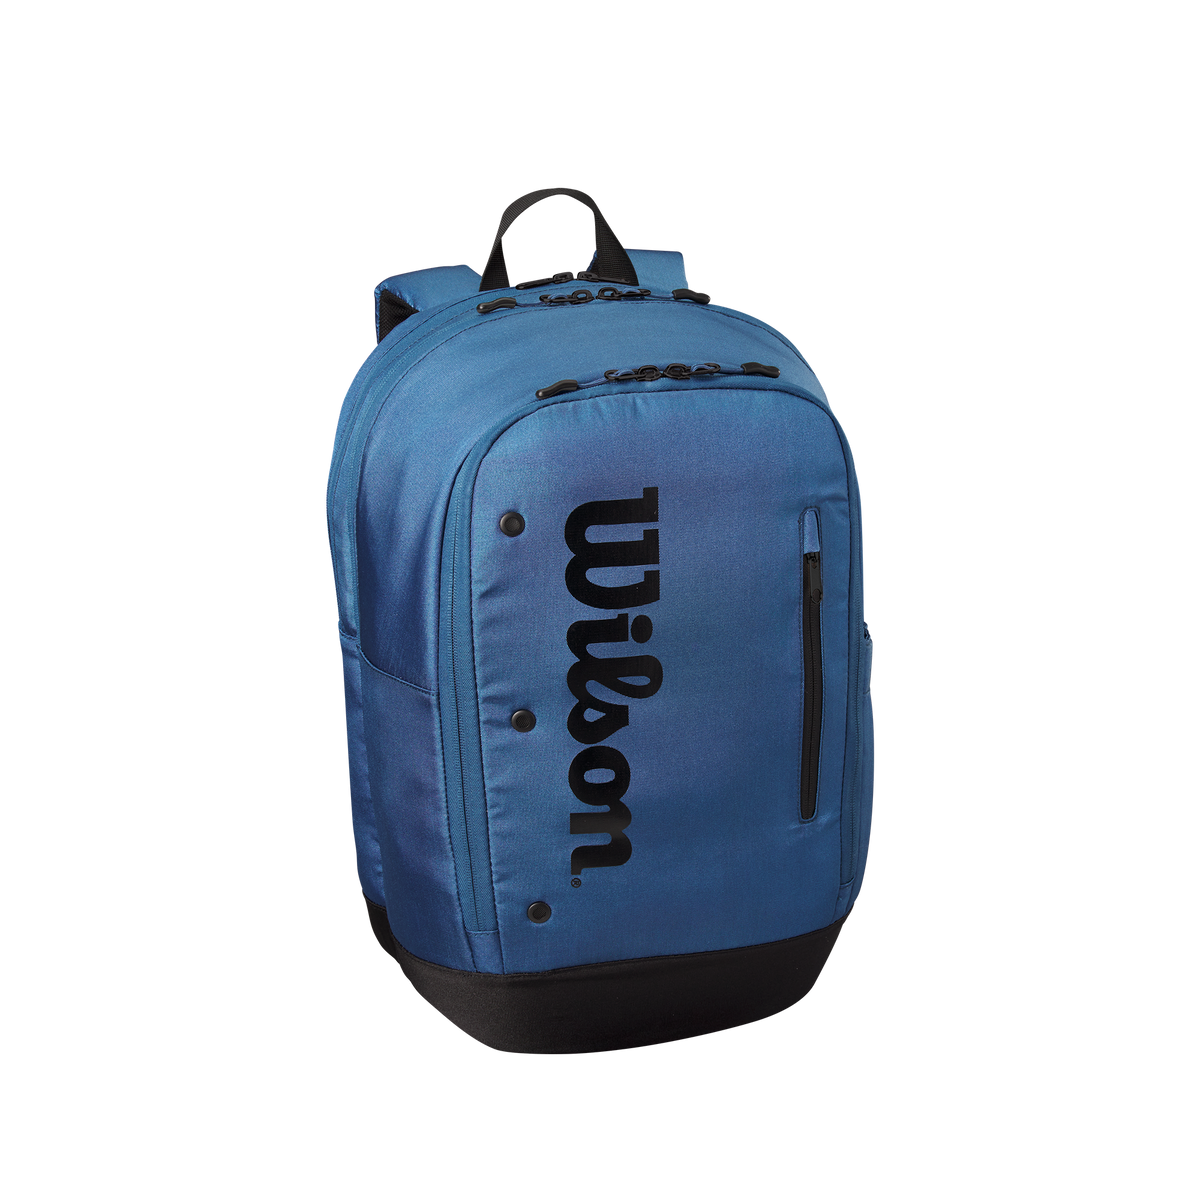 Wilson Ultra V4 Tour Backpack